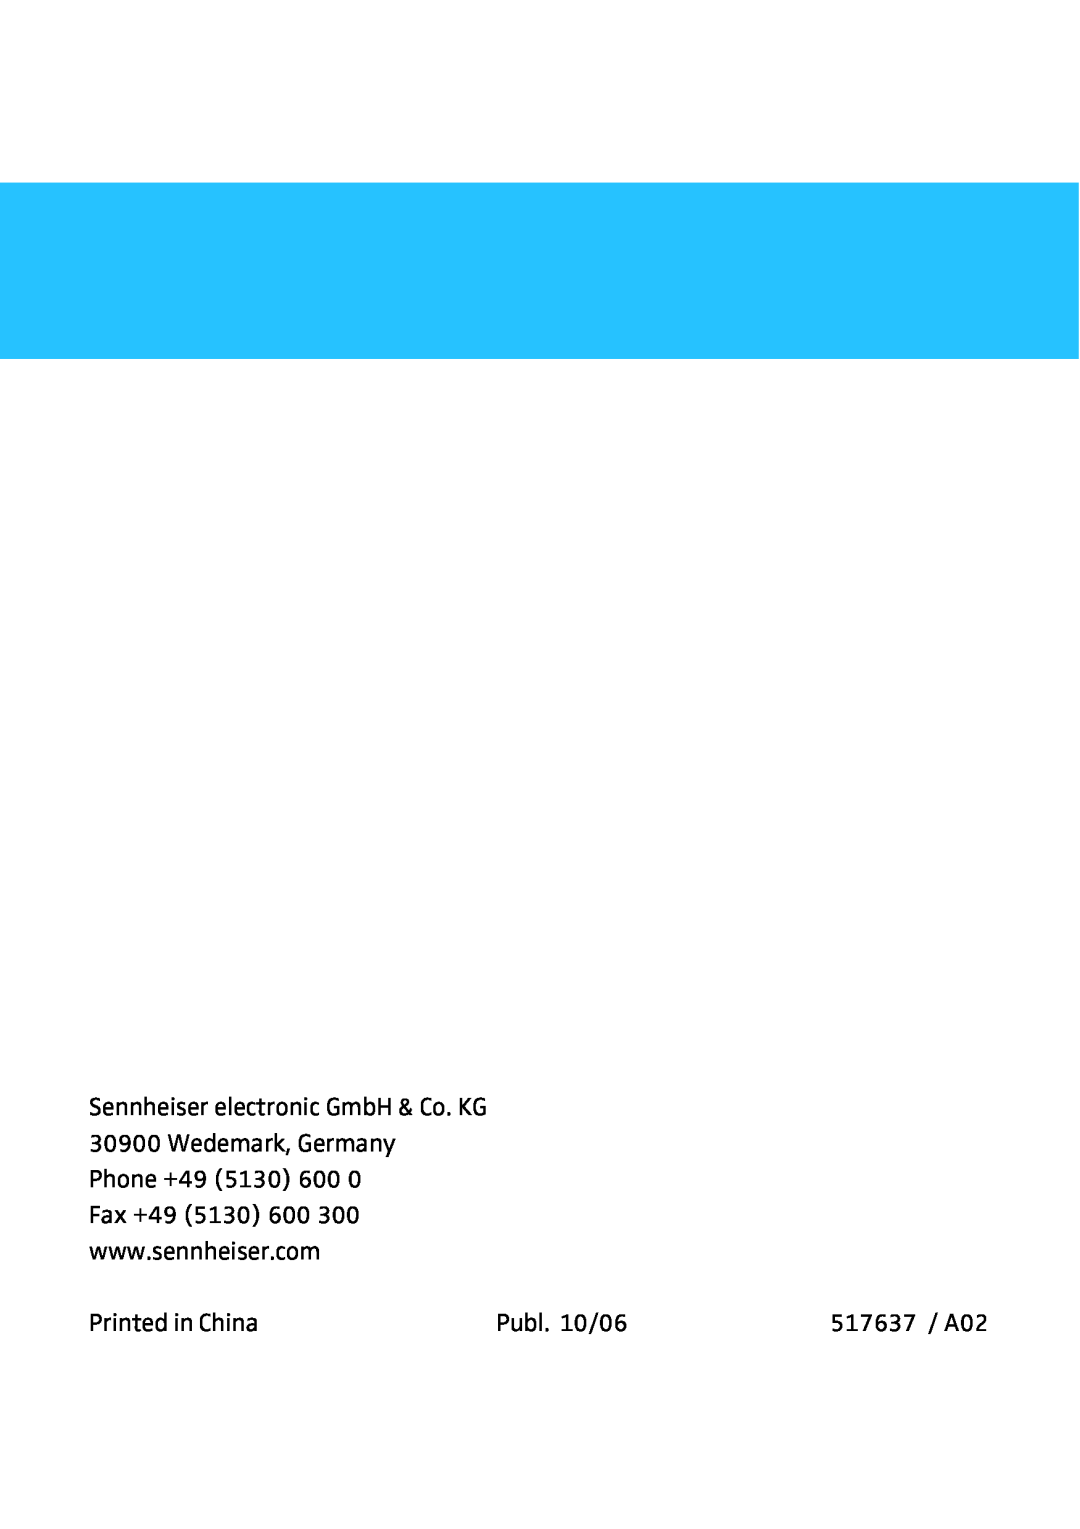 Sennheiser IS410 manual Publ. 10/06, 517637 / A02 